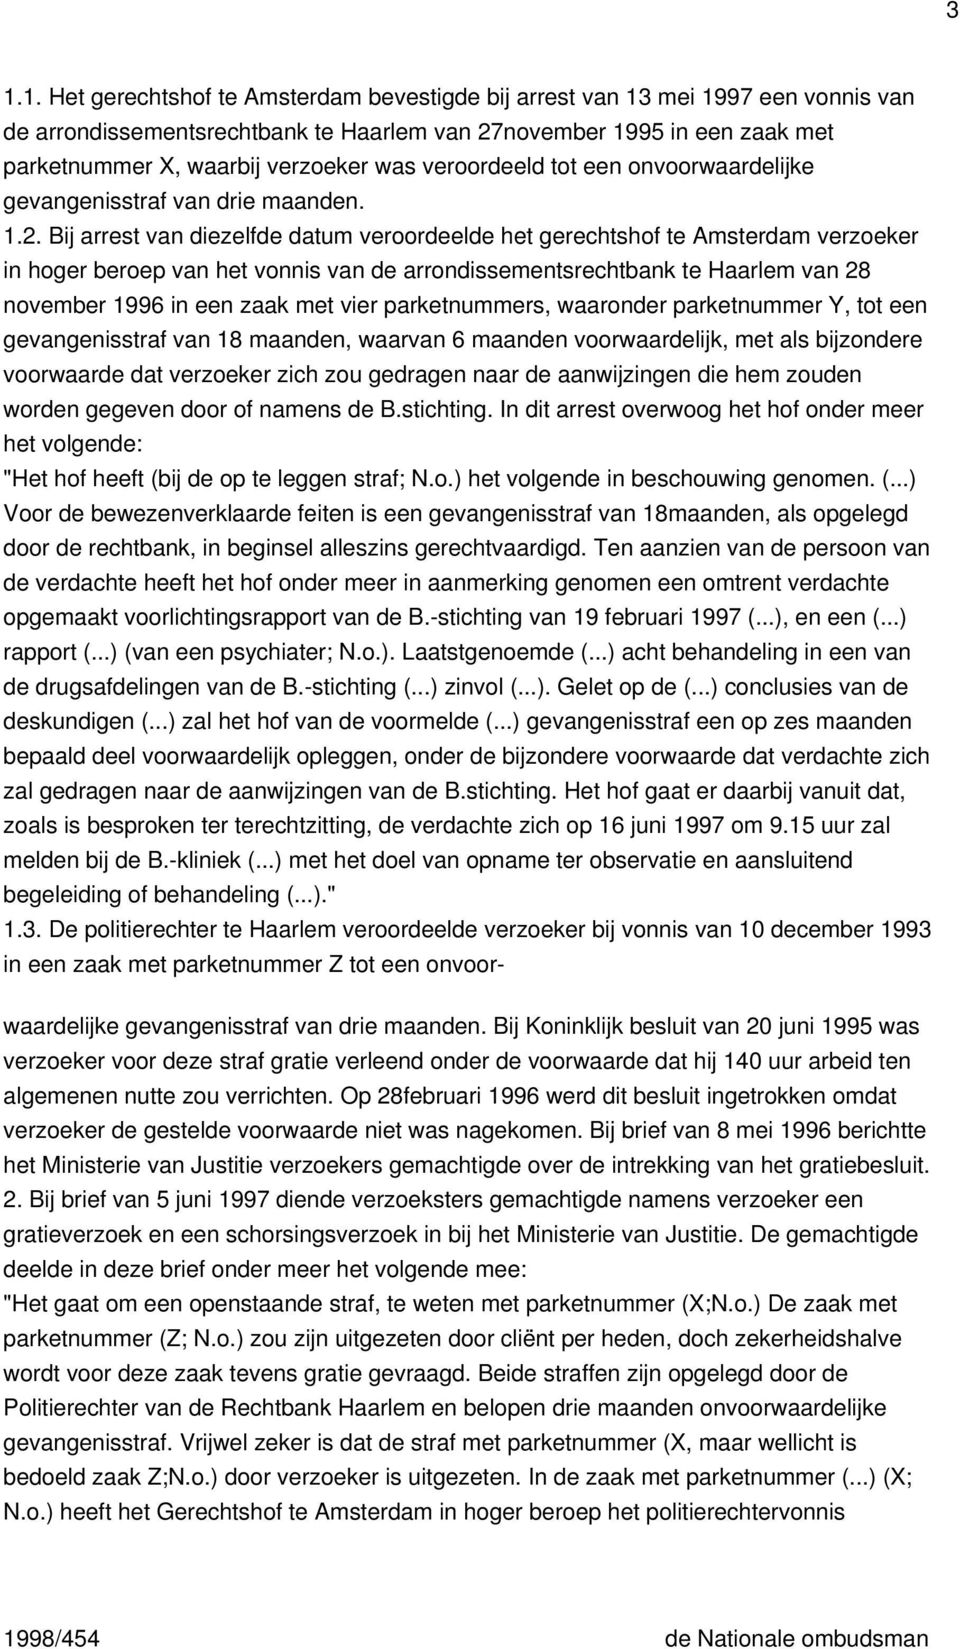 Bij arrest van diezelfde datum veroordeelde het gerechtshof te Amsterdam verzoeker in hoger beroep van het vonnis van de arrondissementsrechtbank te Haarlem van 28 november 1996 in een zaak met vier